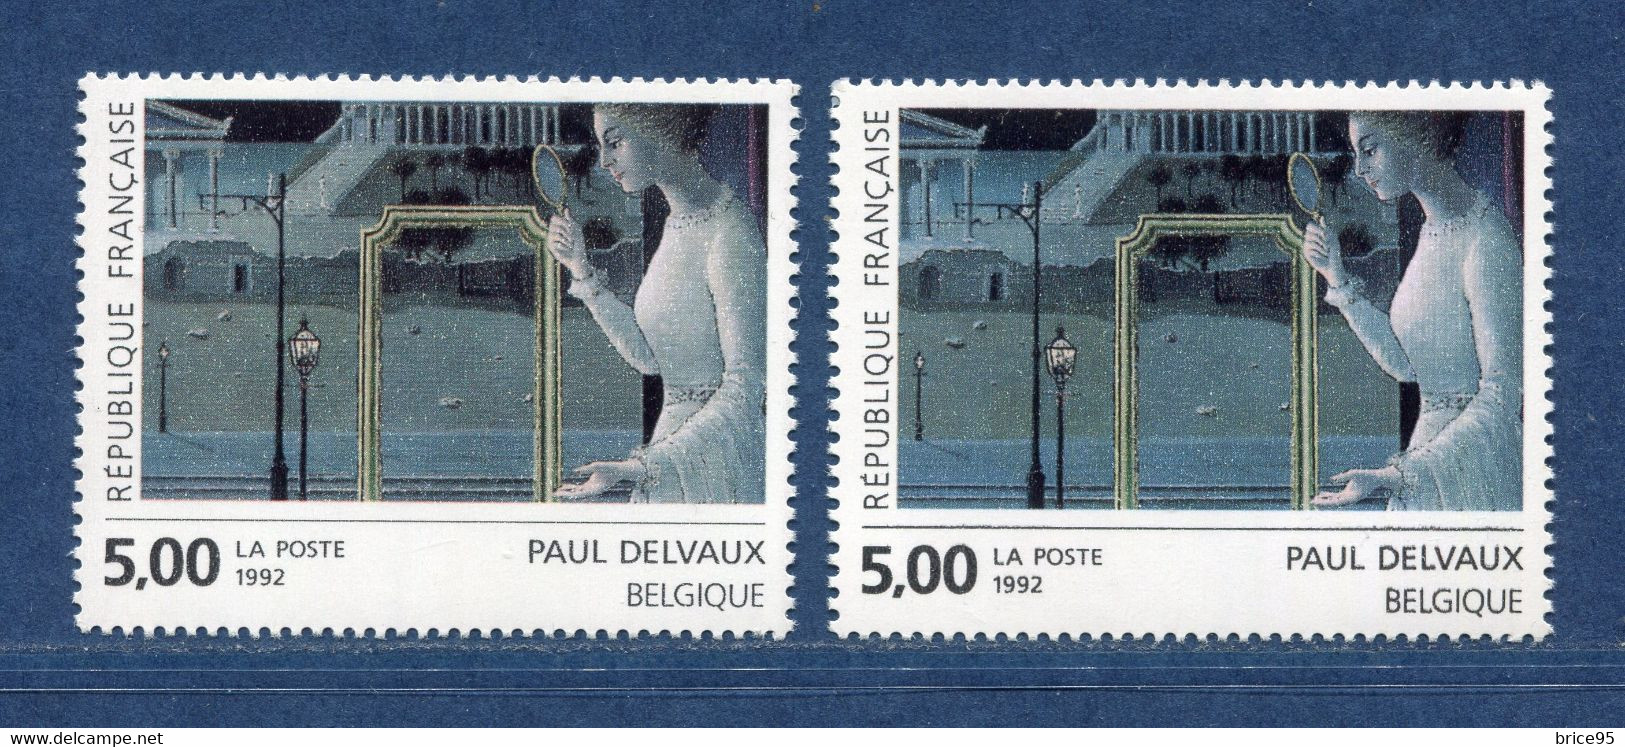 ⭐ France - Variété - YT N° 2781 - Couleurs - Pétouilles - Neuf Sans Charnière - 1992 ⭐ - Nuovi